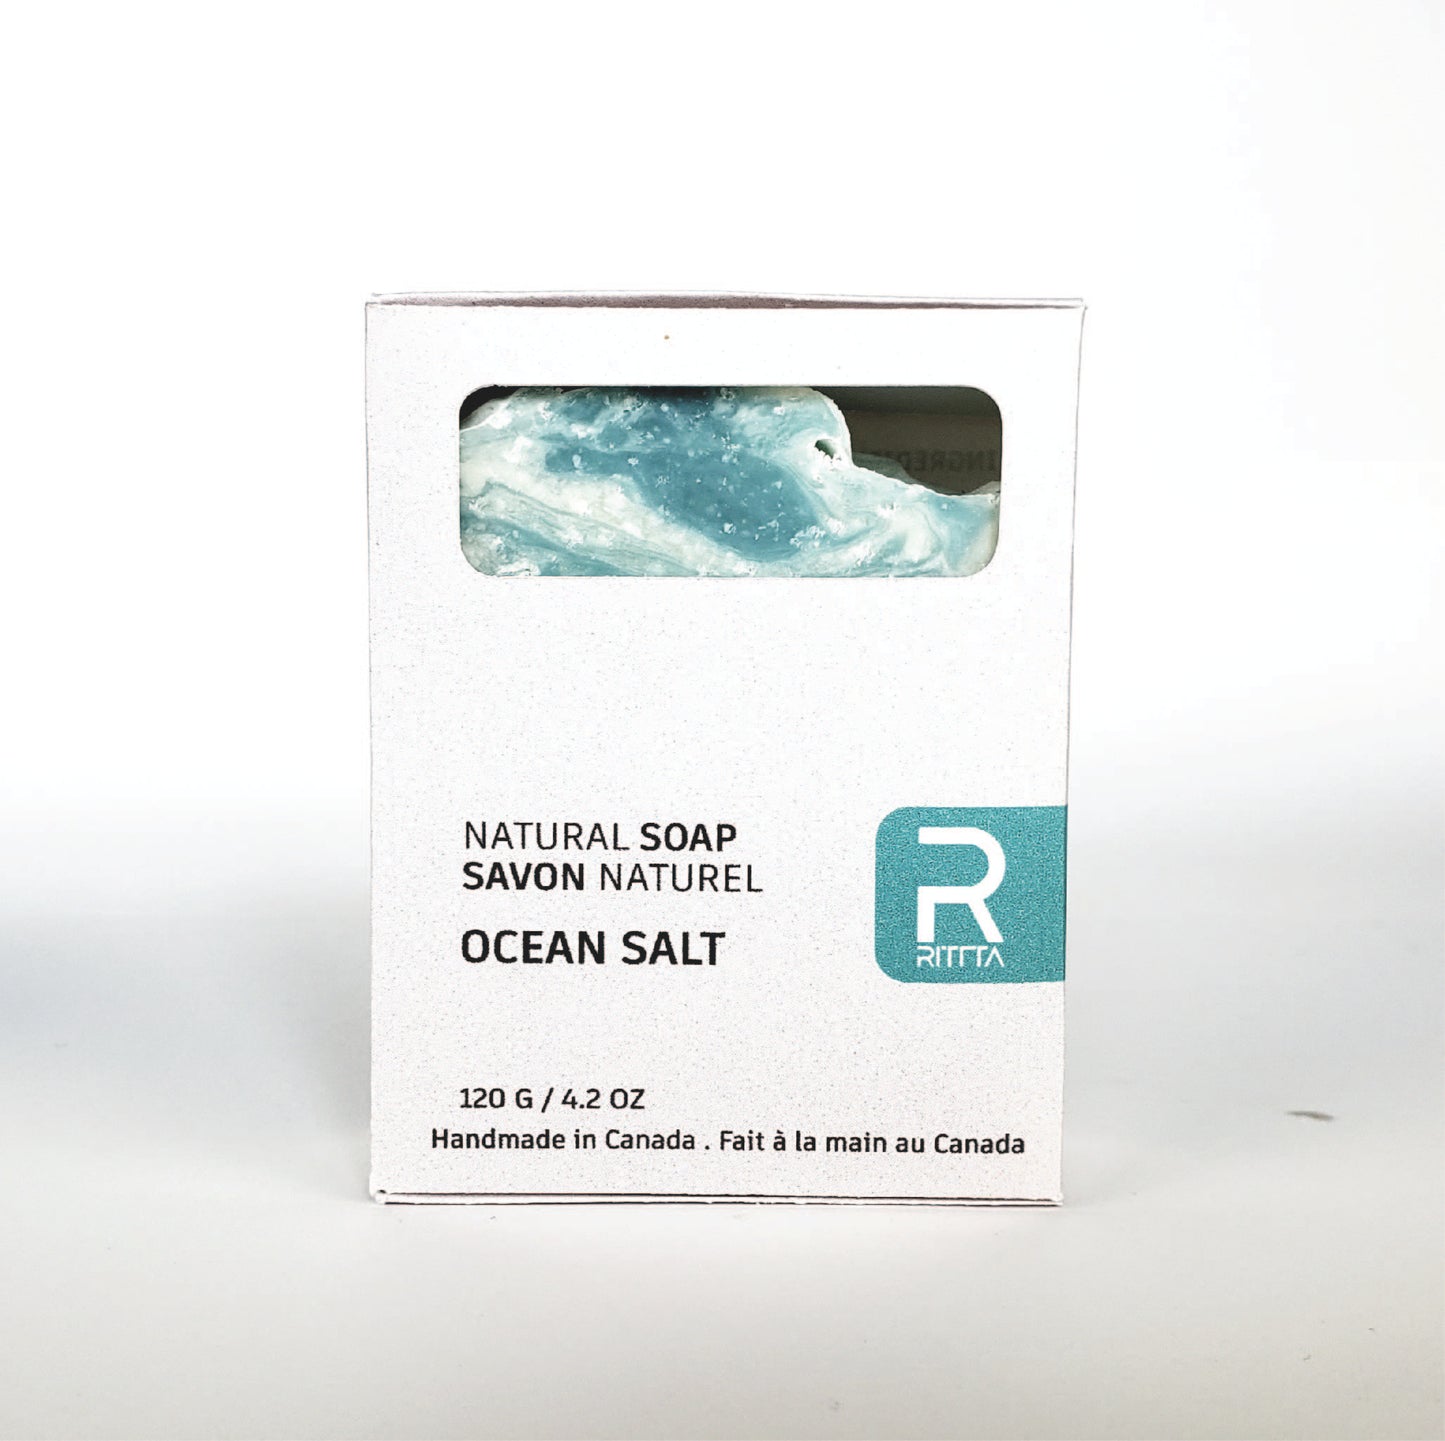 OCEAN SALT